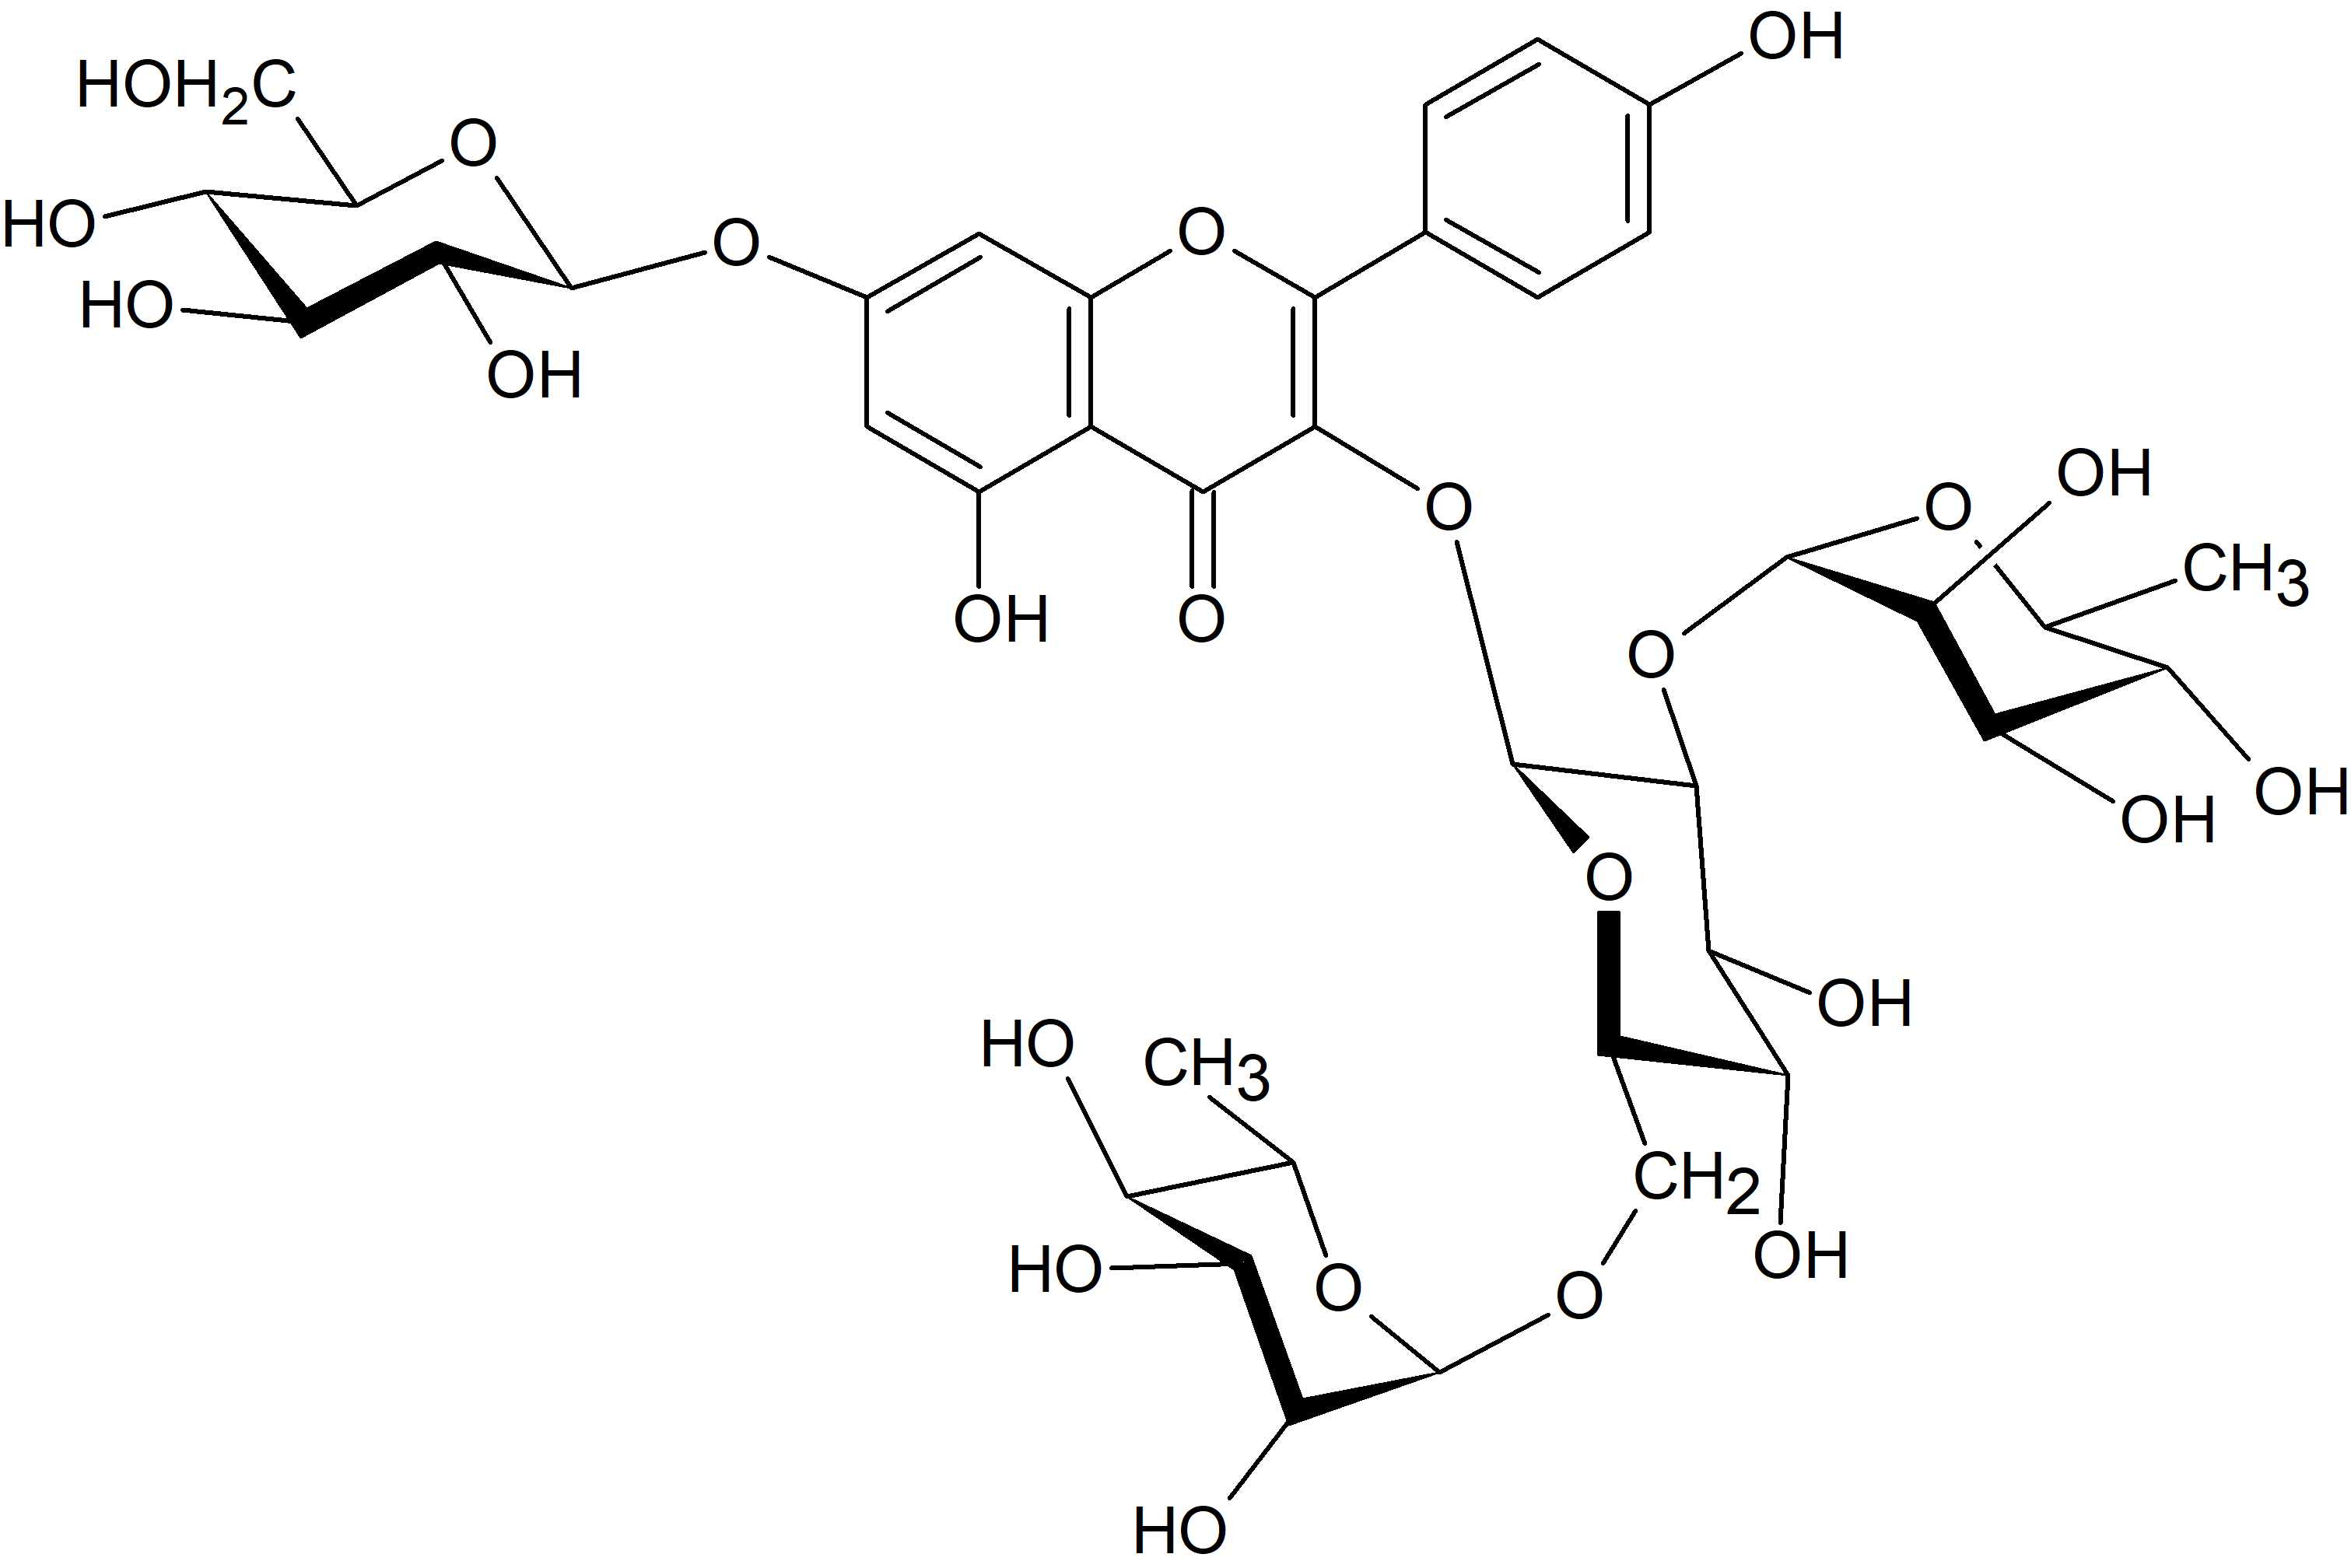 Kaempferol 3-O-rhamnosyl-(1→2)-[rhamnosyl-(1→6)-glucoside]-7-O-glucoside